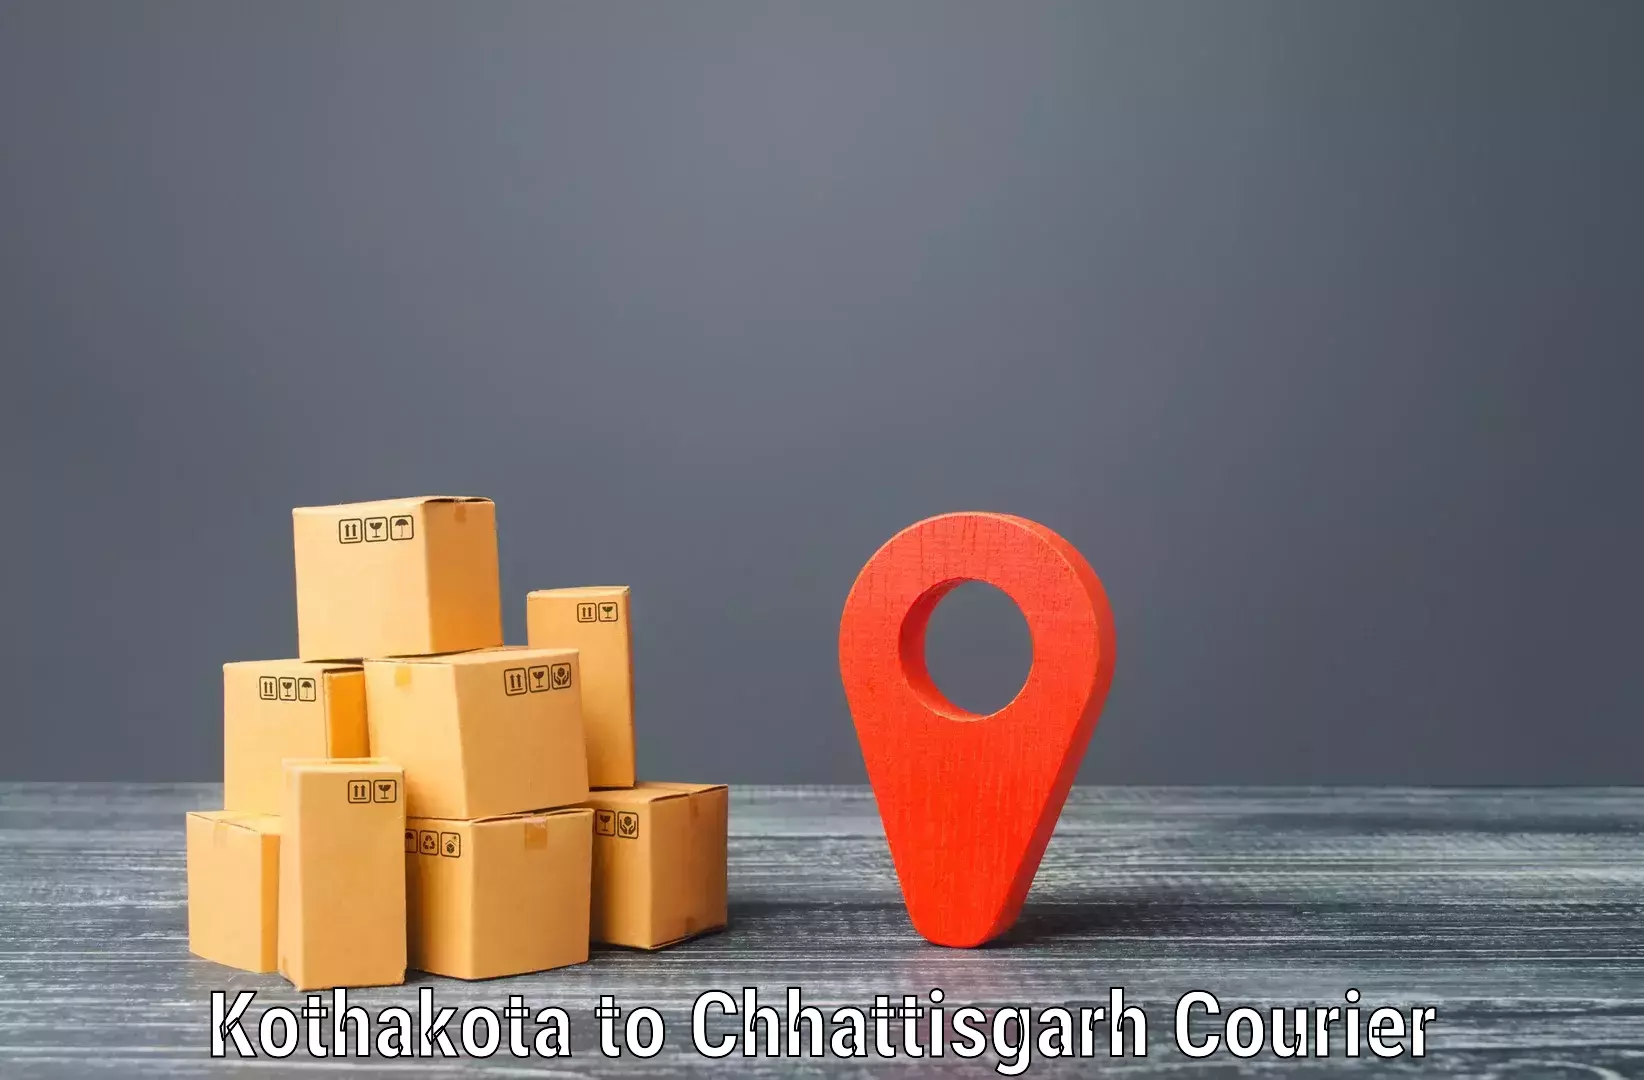 Reliable delivery network Kothakota to IIT Bhilai